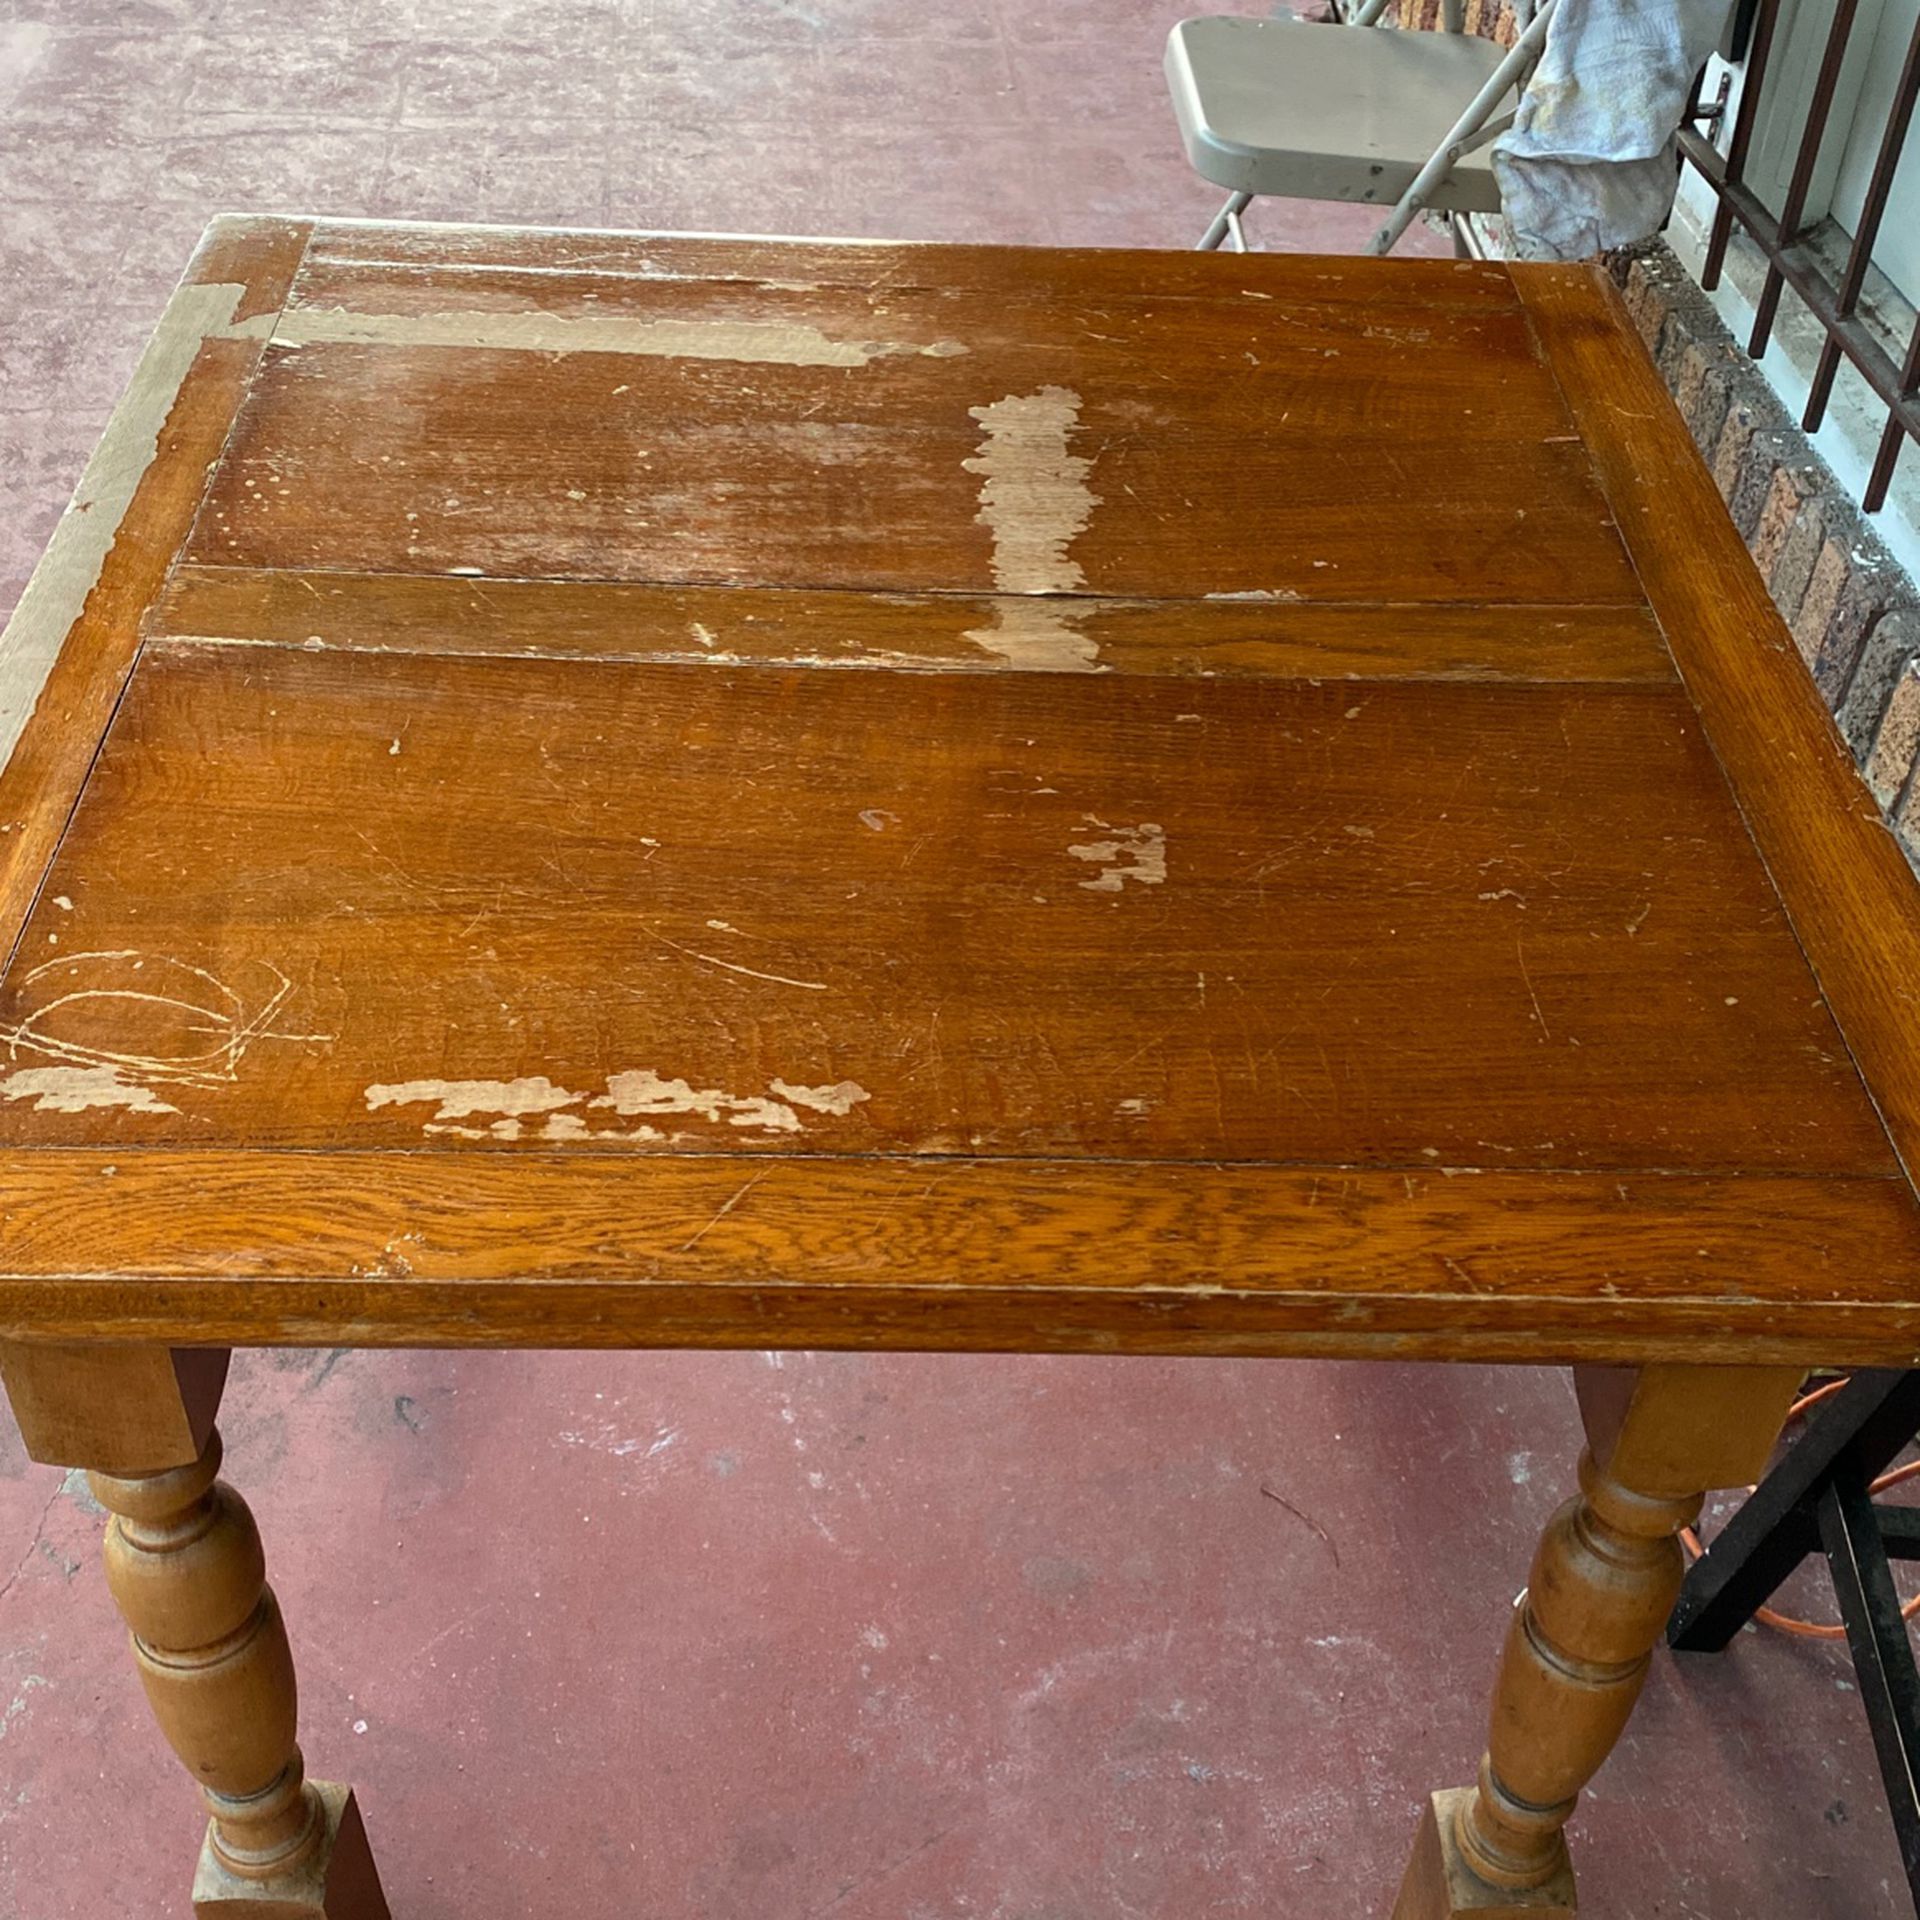 Extendable Antique Table $15